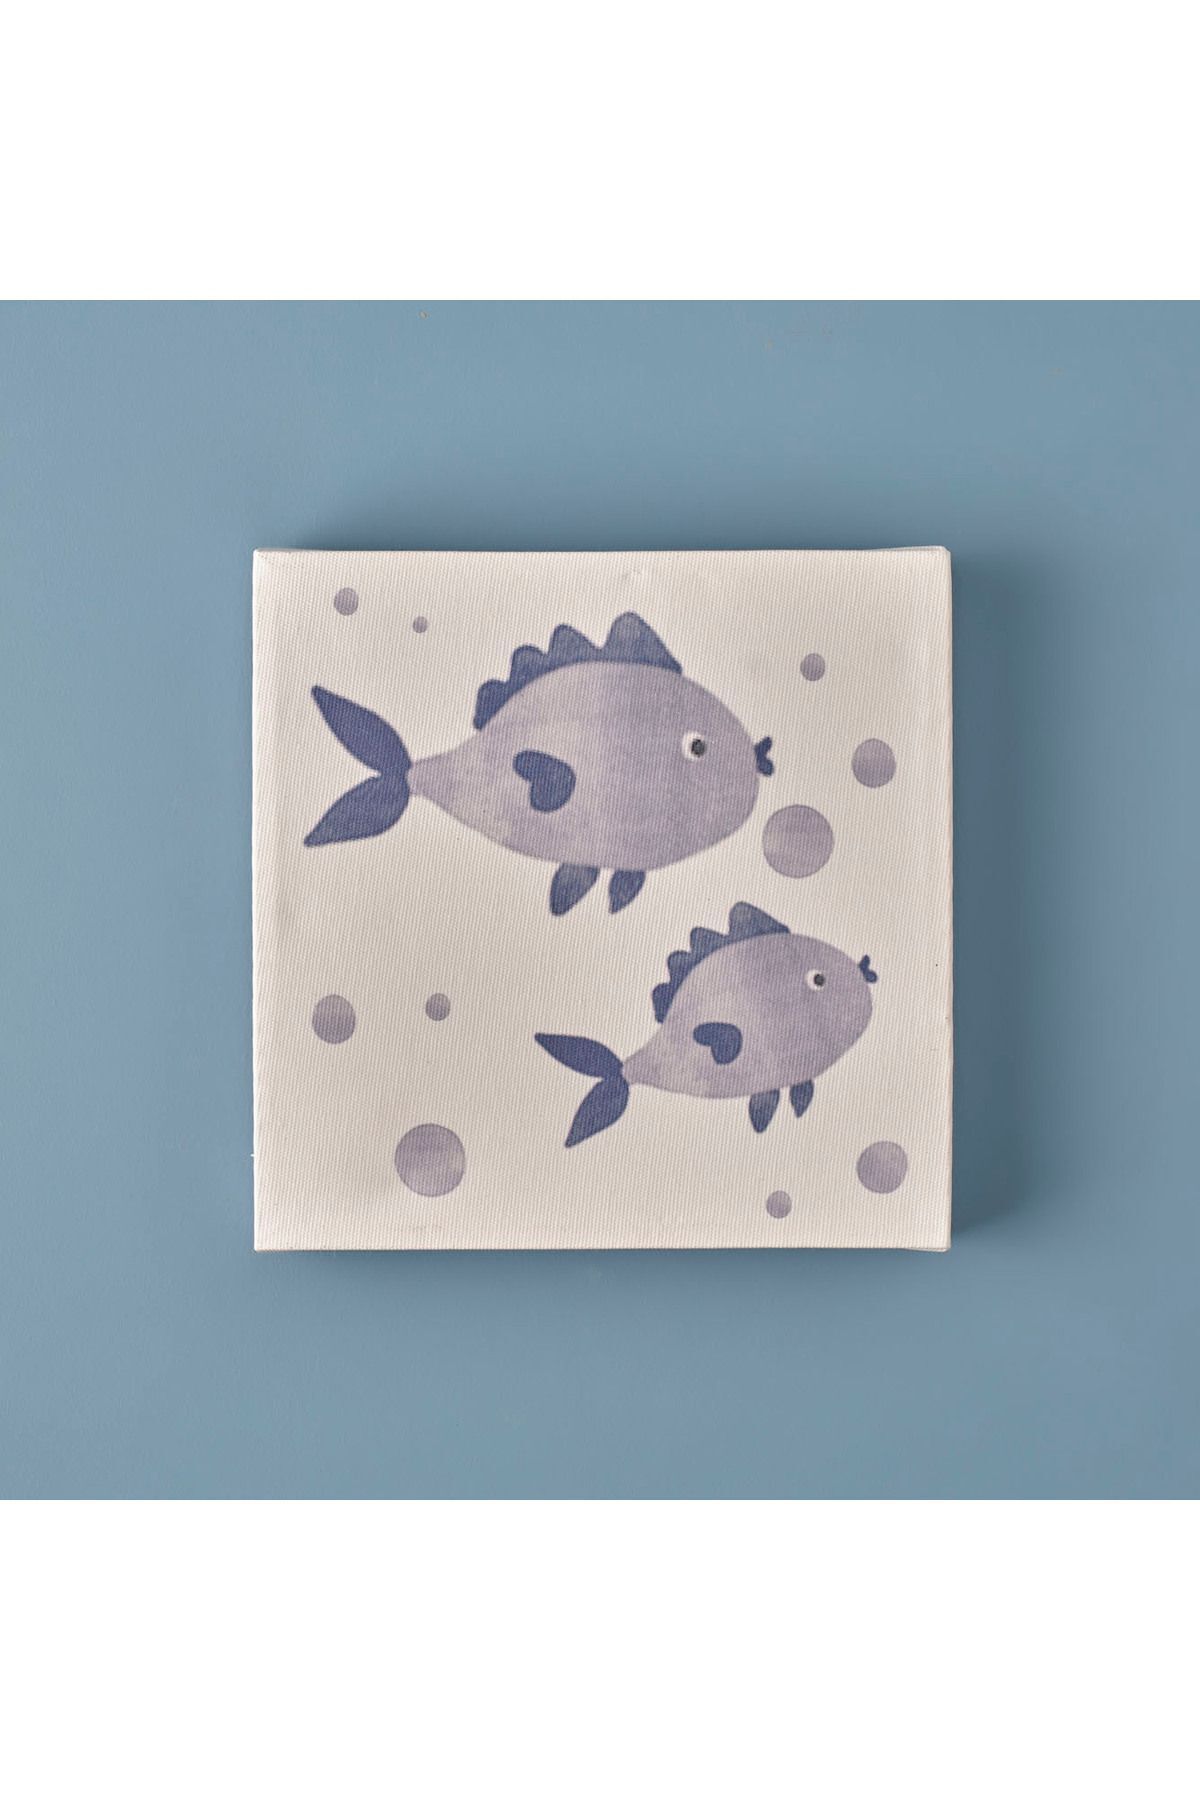 Bella Maison Marine Fishes Kanvas Tablo (20x20 cm) 1002TBLO0037